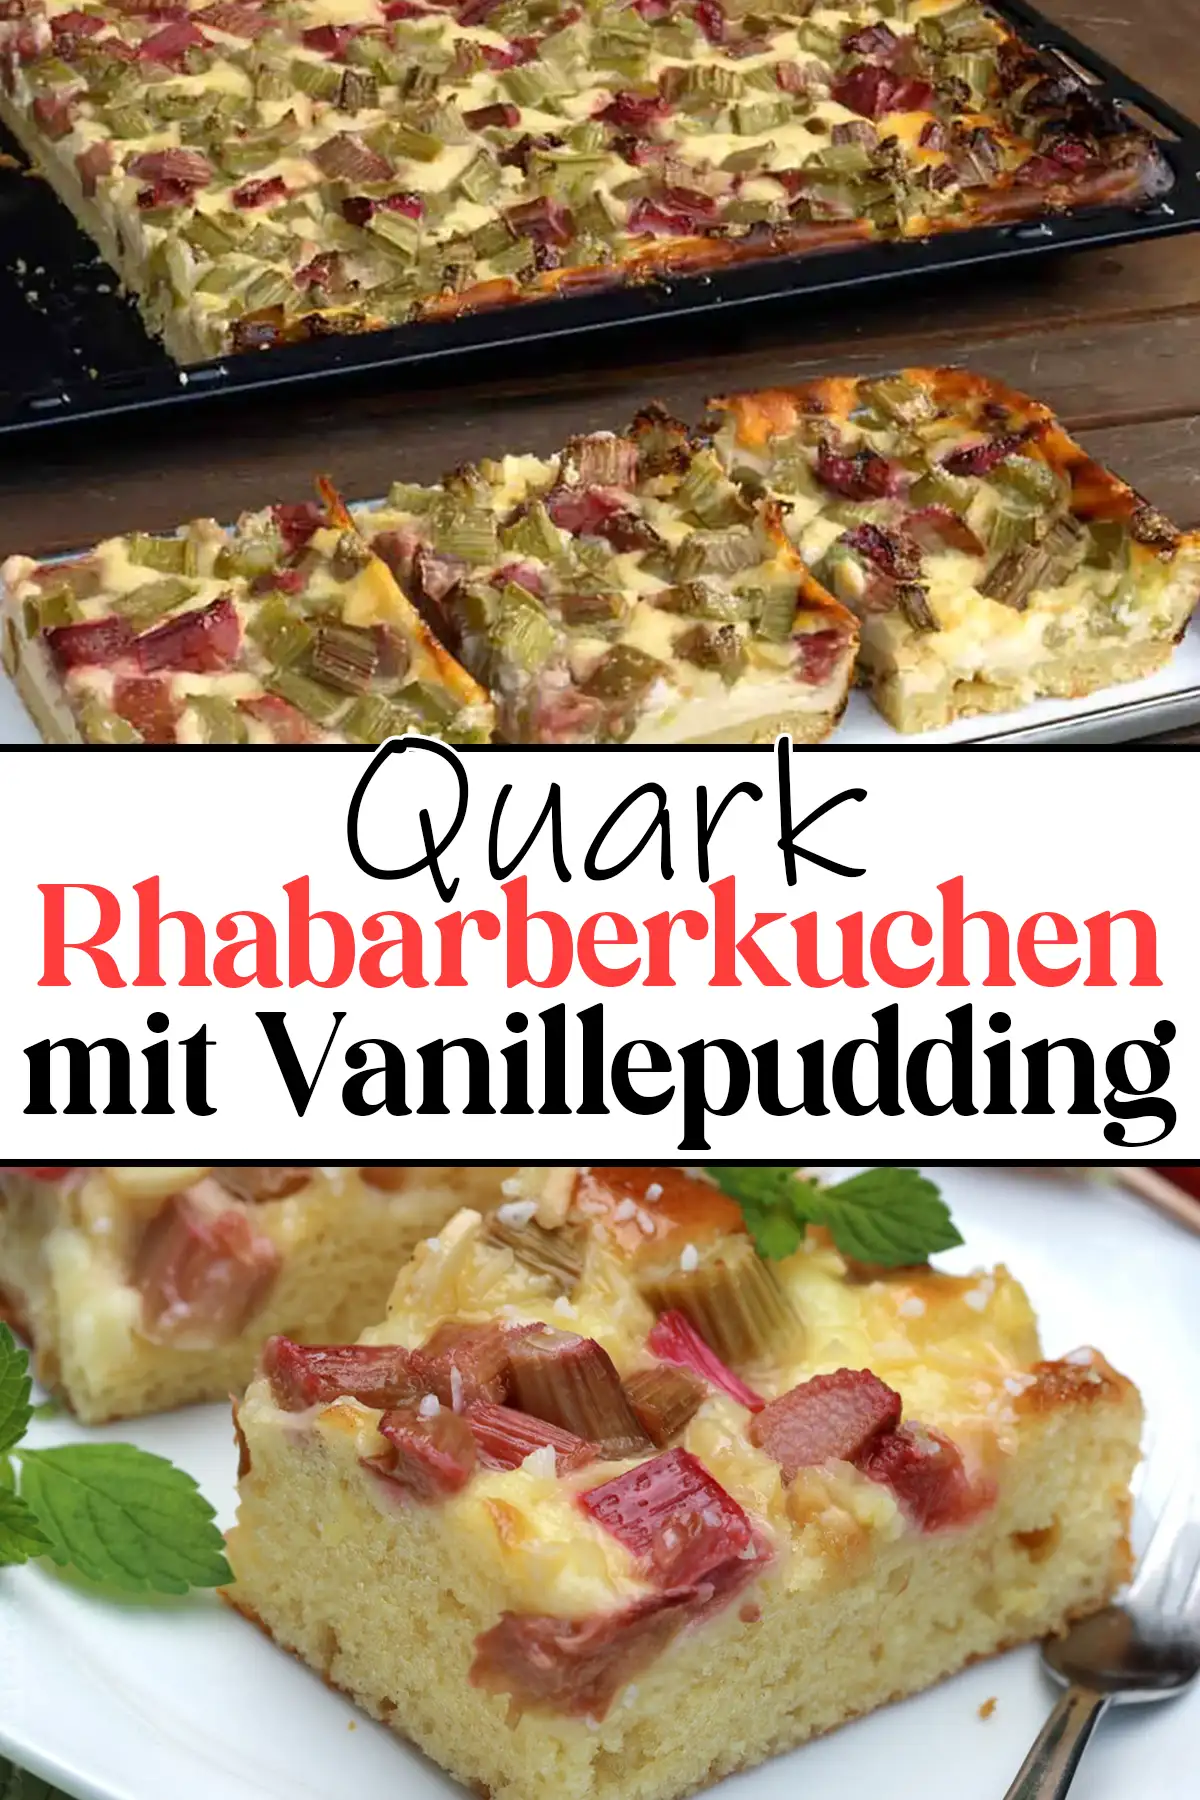 Quark Rhabarberkuchen mit Vanillepudding Rezept: Geschmacksexplosion